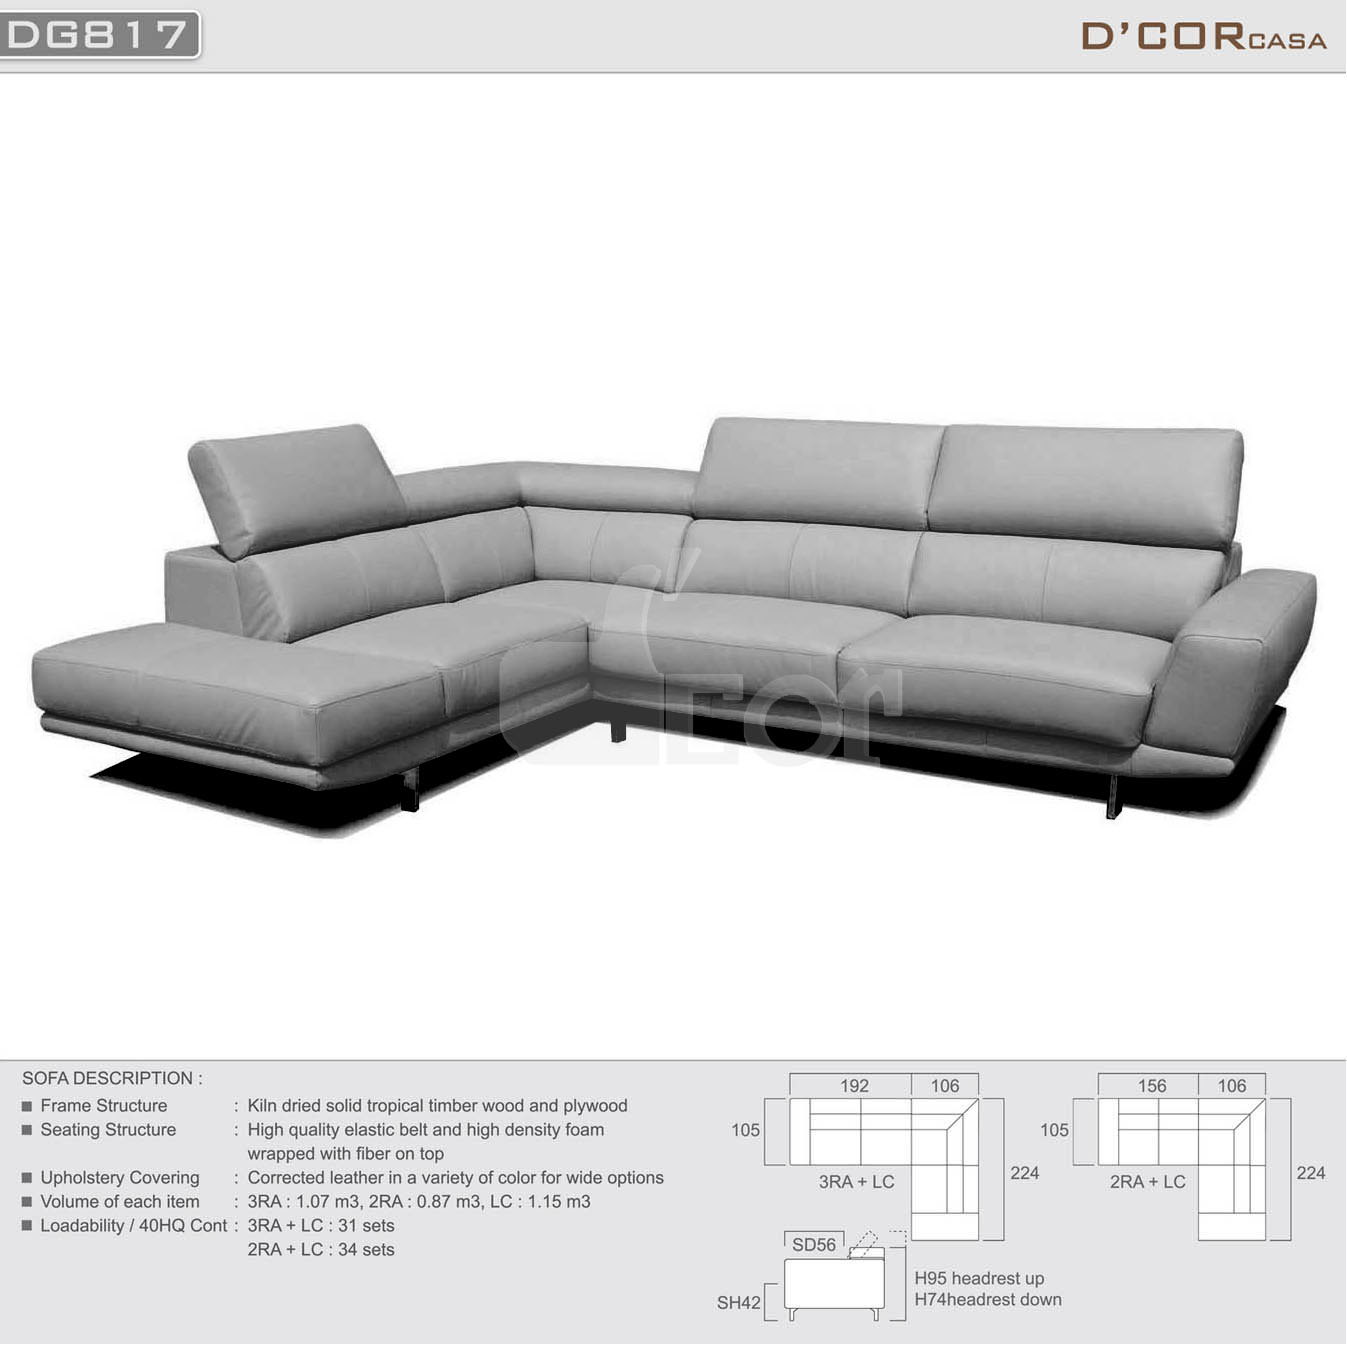 Phòng khách đơn giản, hiện đại với sofa da nhập khẩu Malaysia DG817